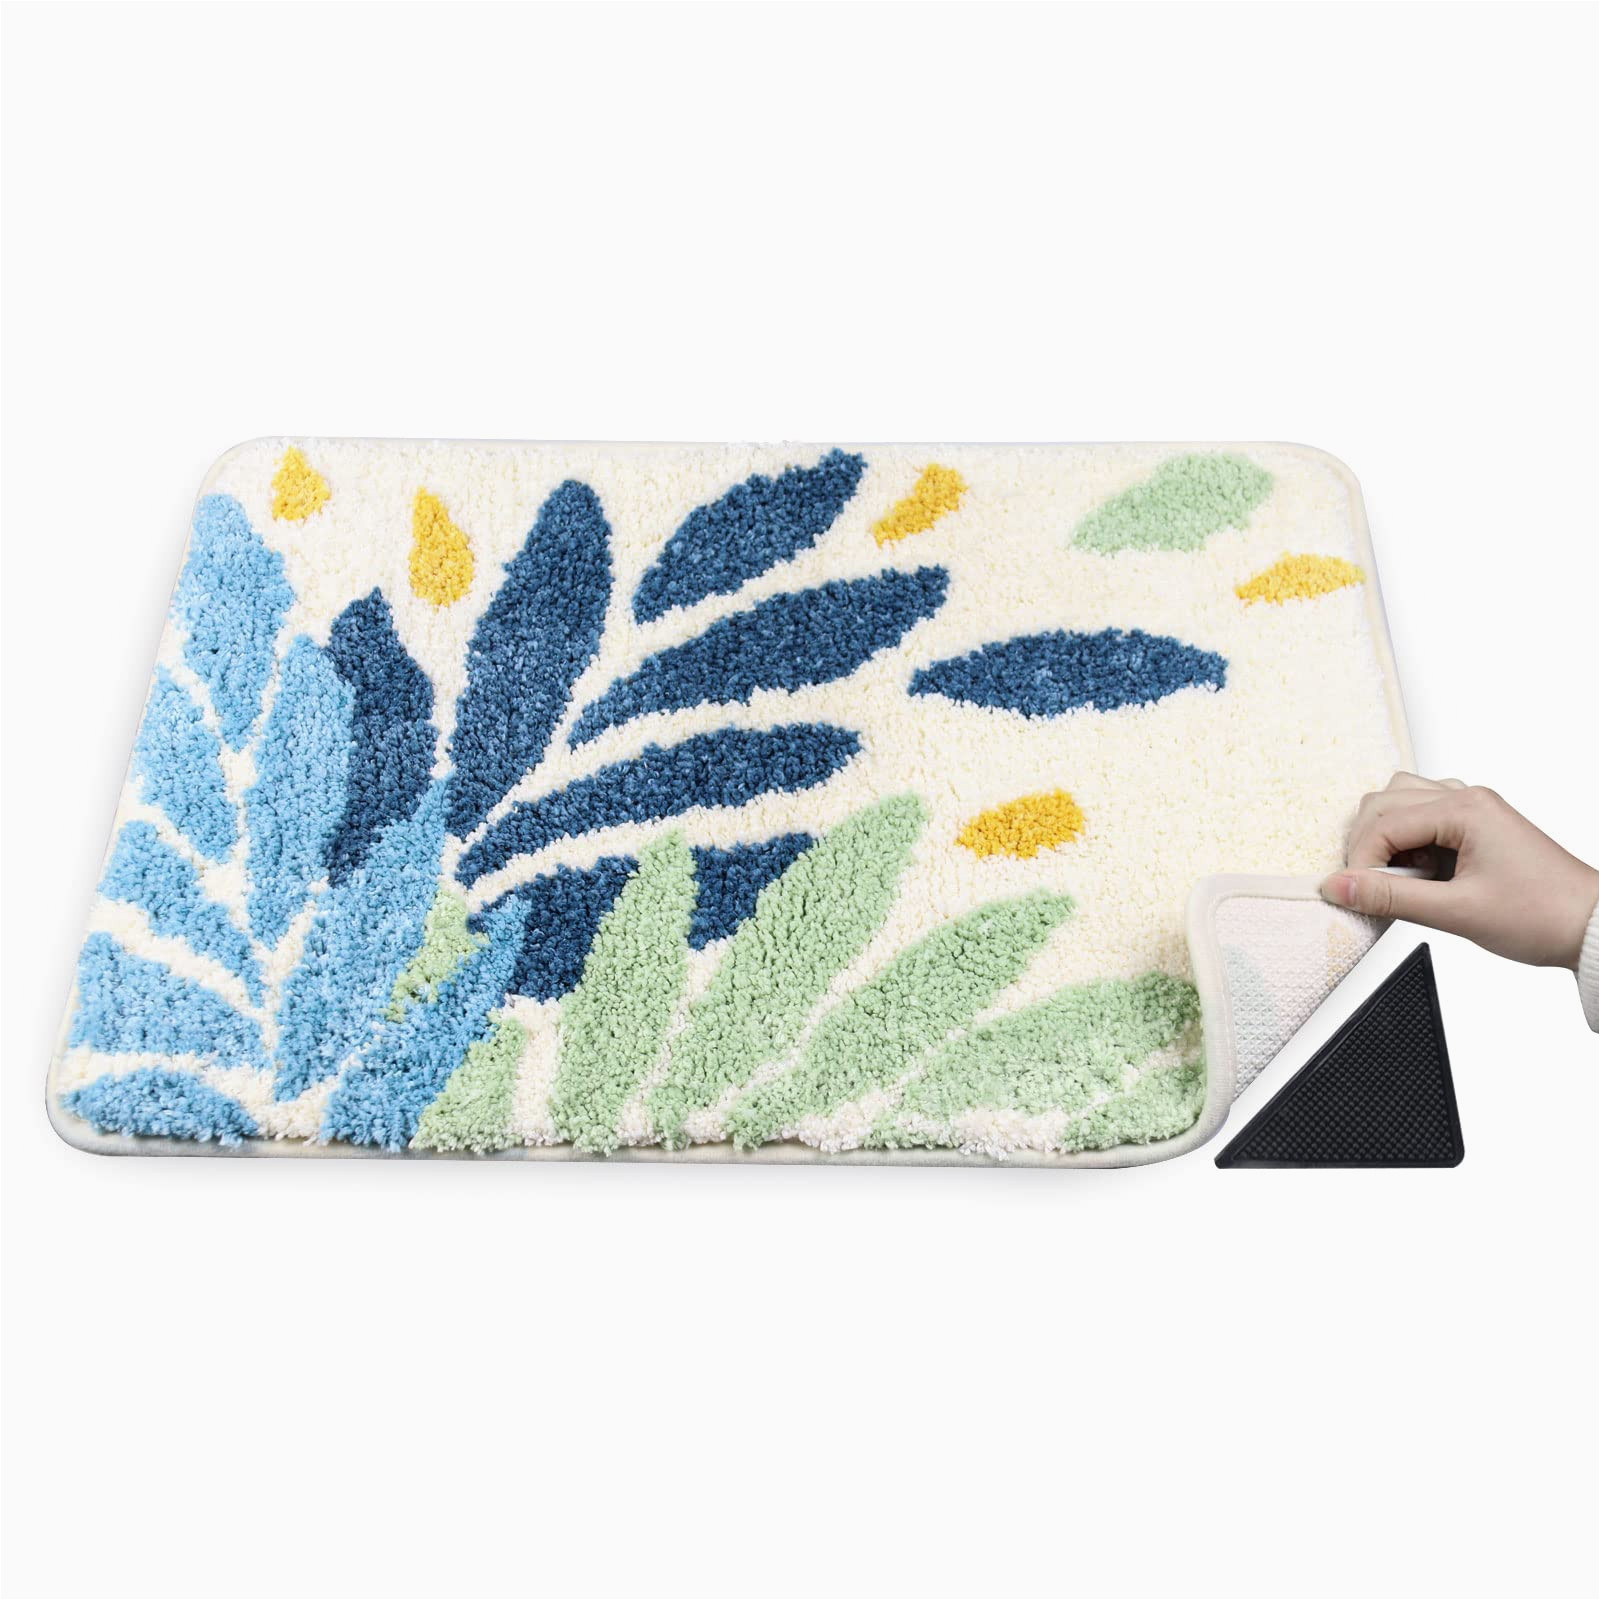 Blue Green Bathroom Rugs Amazon.com: Twopone Bathroom Rugs Non Slip – Leaf Pattern Bath Mat …